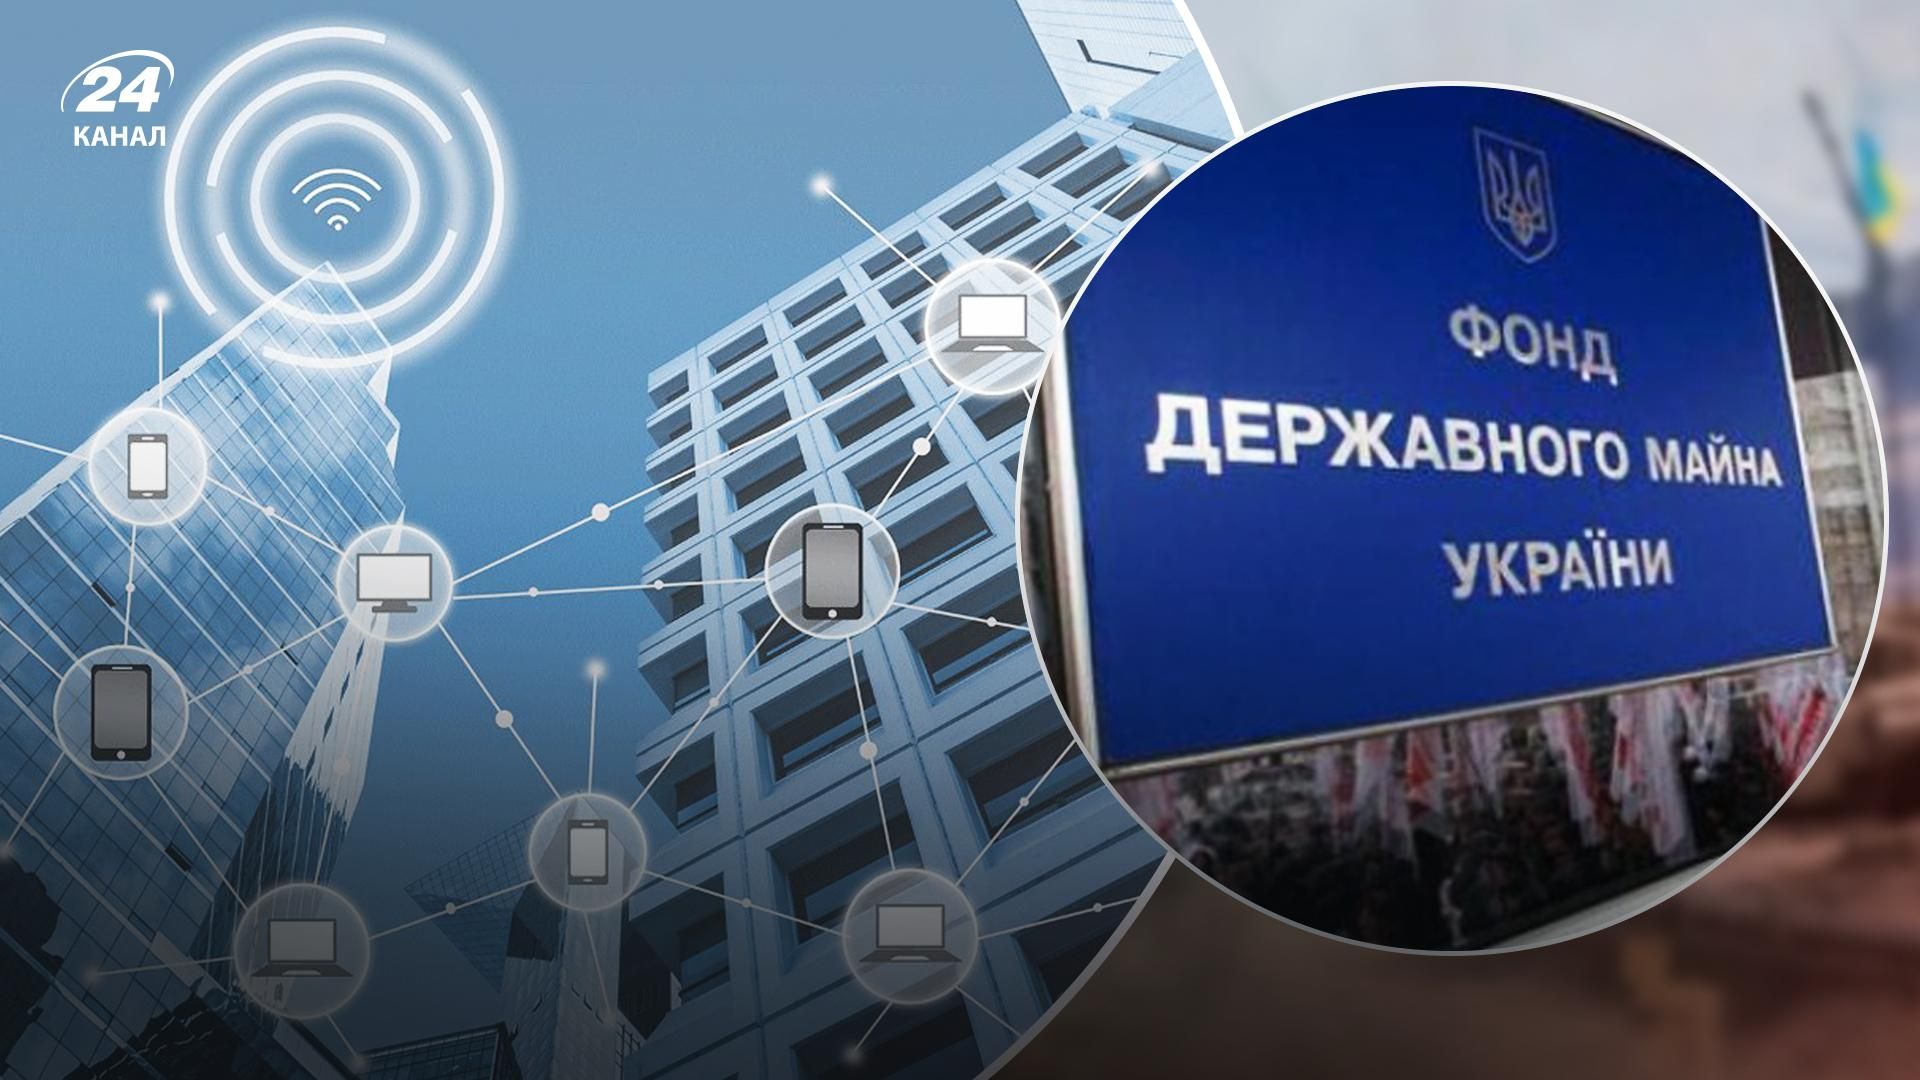 Фонд держмайна України працює над удосконаленням сервісу автоматичної оцінки нерухомості - Нерухомість